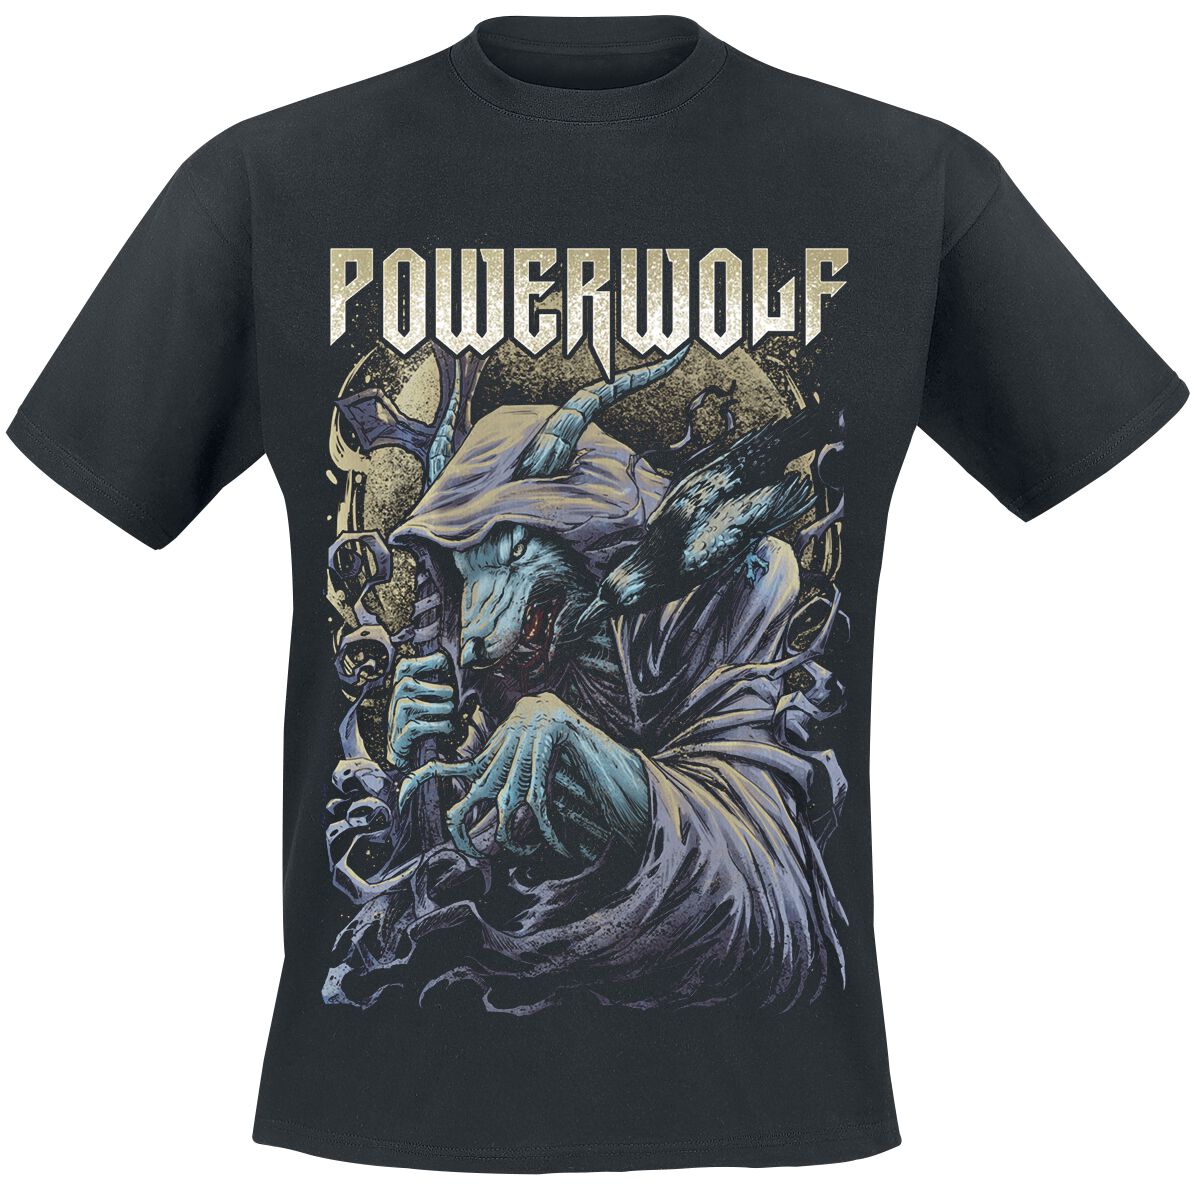 Powerwolf Metallum Nostrum 1 Album Cover Sticker